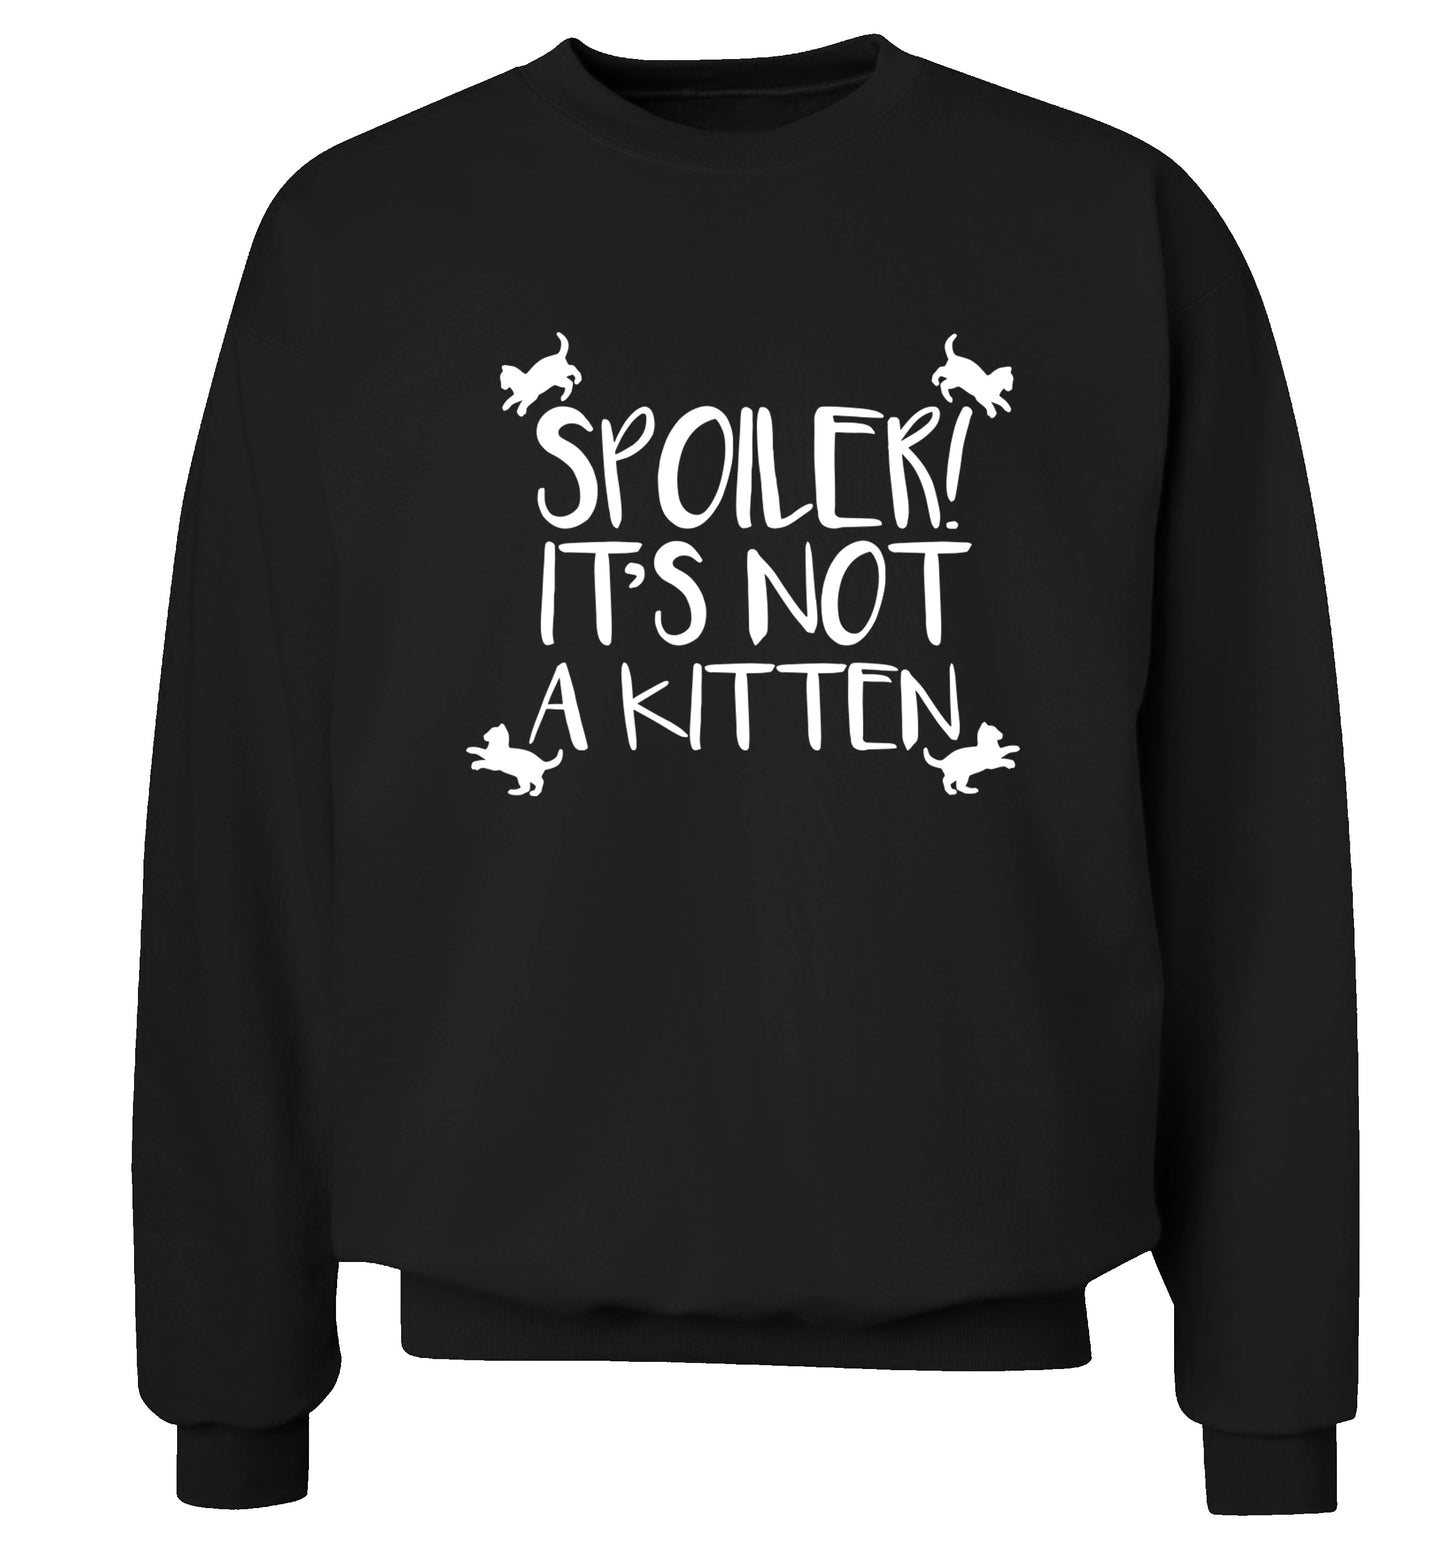 Spoiler it's not a kitten Adult's unisex black Sweater 2XL